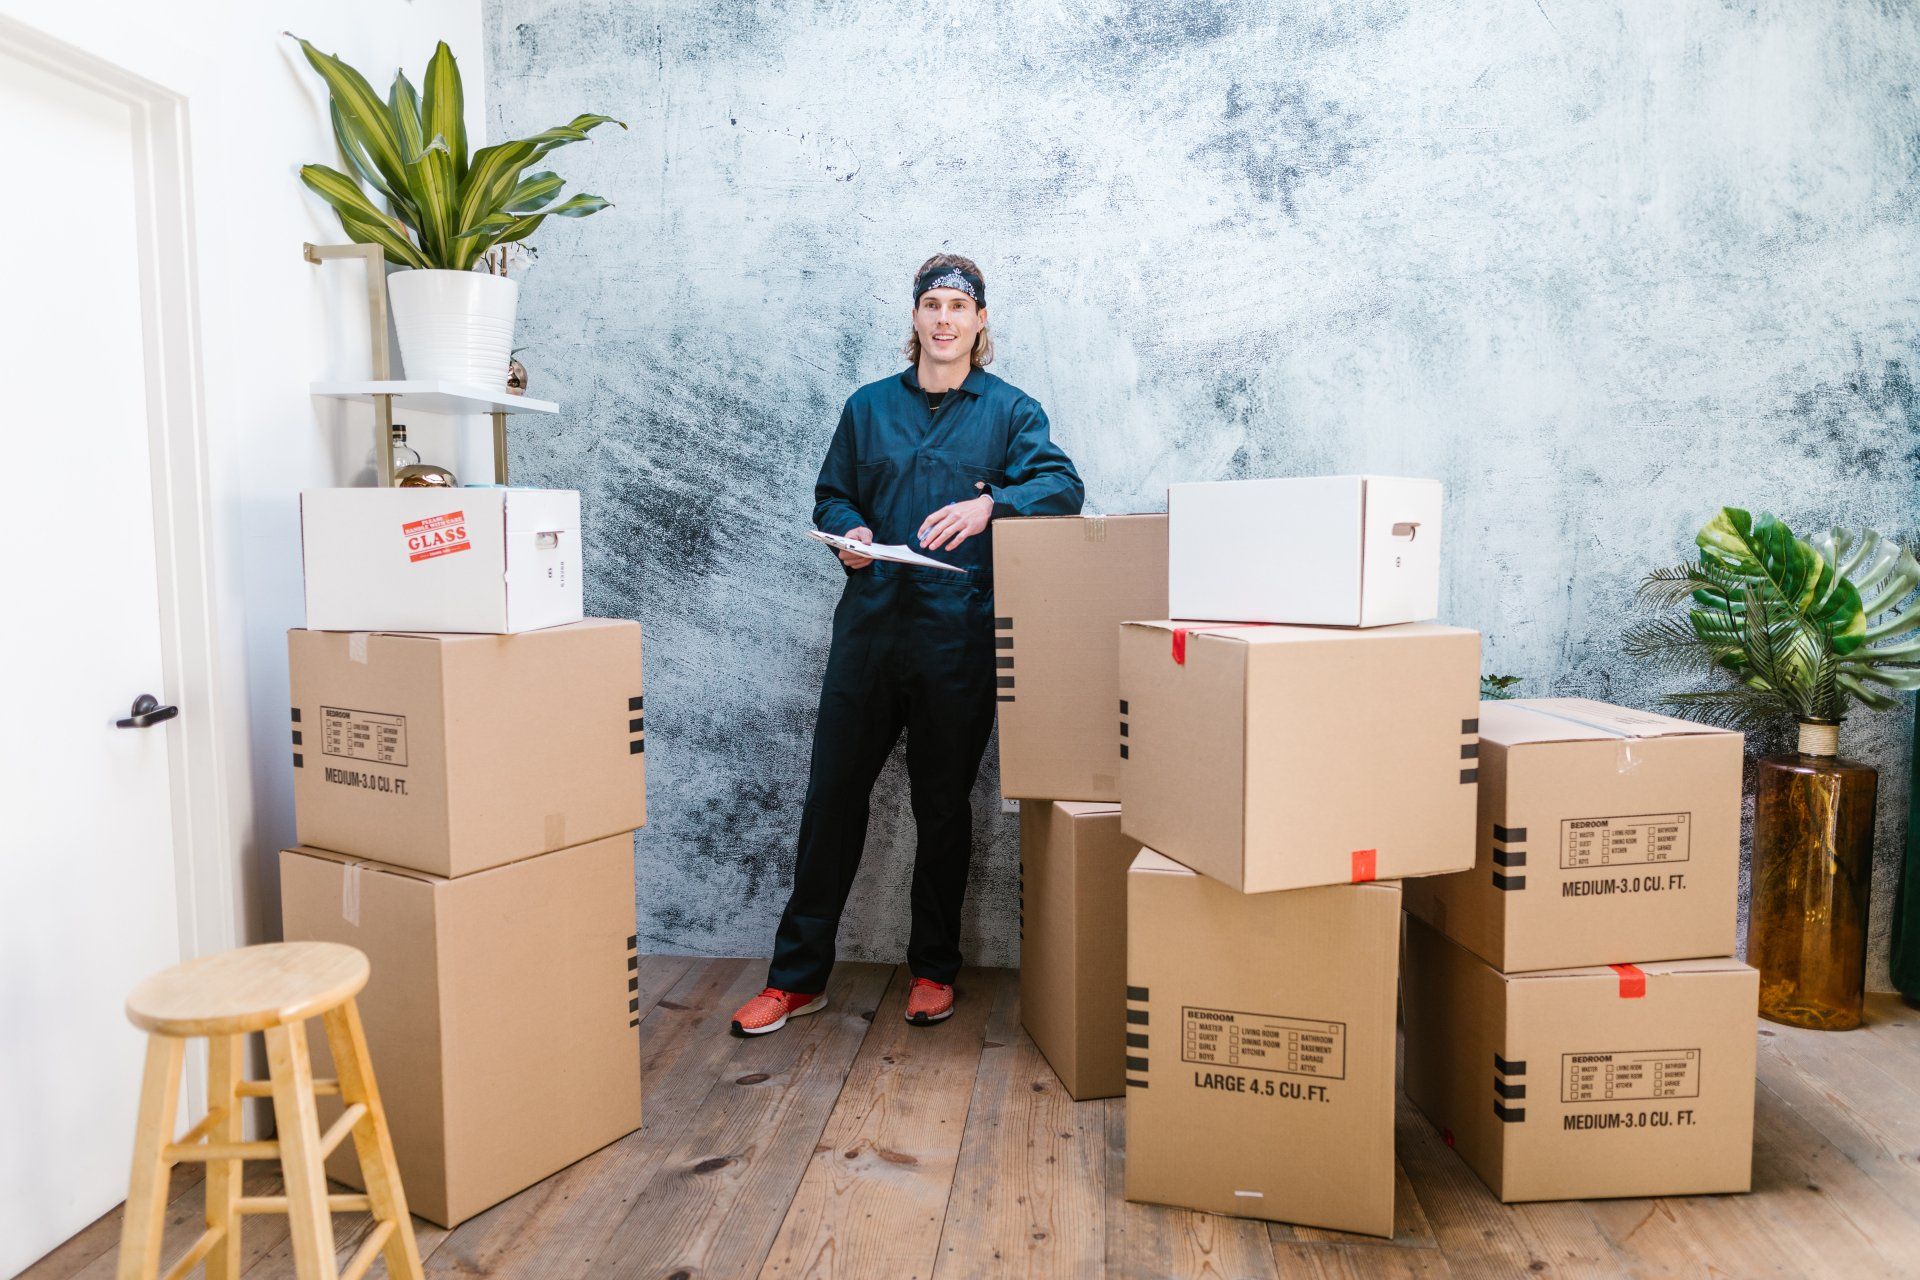 Un homme se tient à côté d'une pile de cartons dans une pièce.